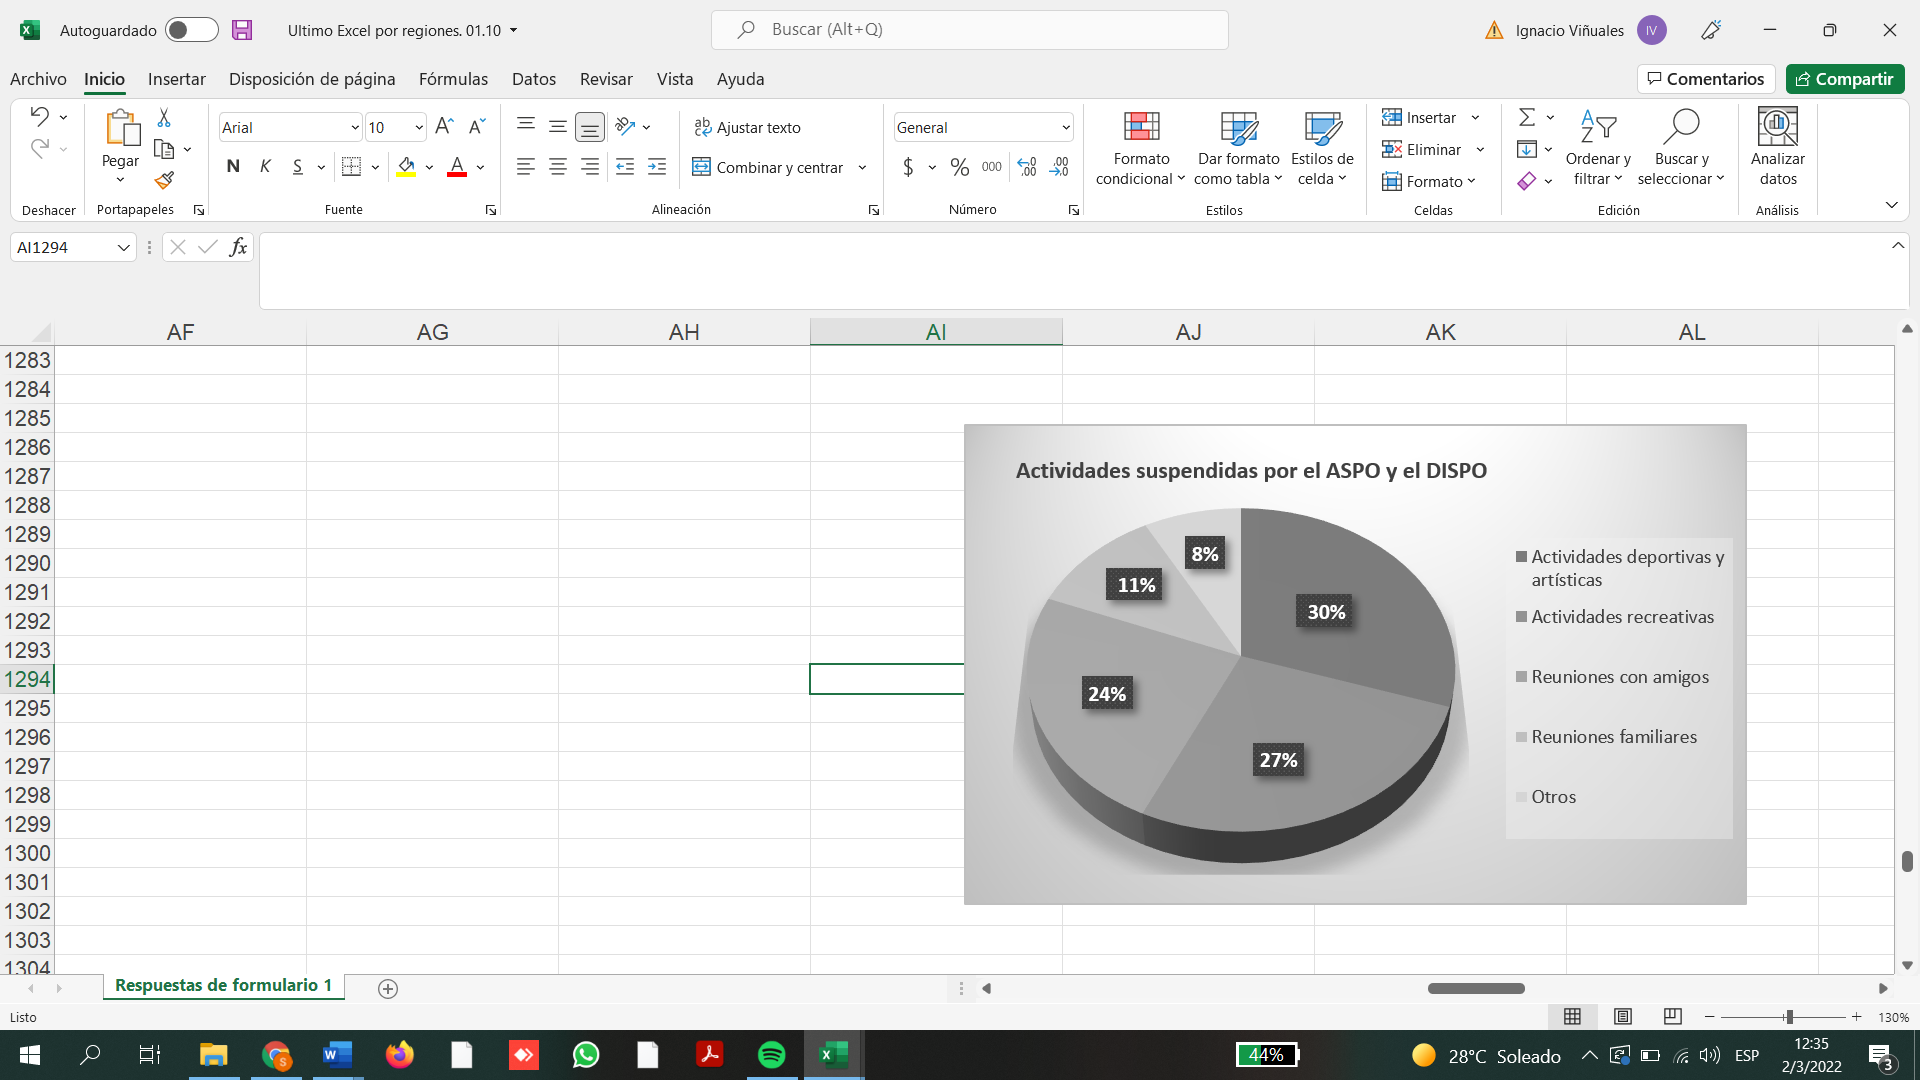 Interfaz de usuario gráfica, Aplicación, Tabla, Excel

Descripción generada automáticamente